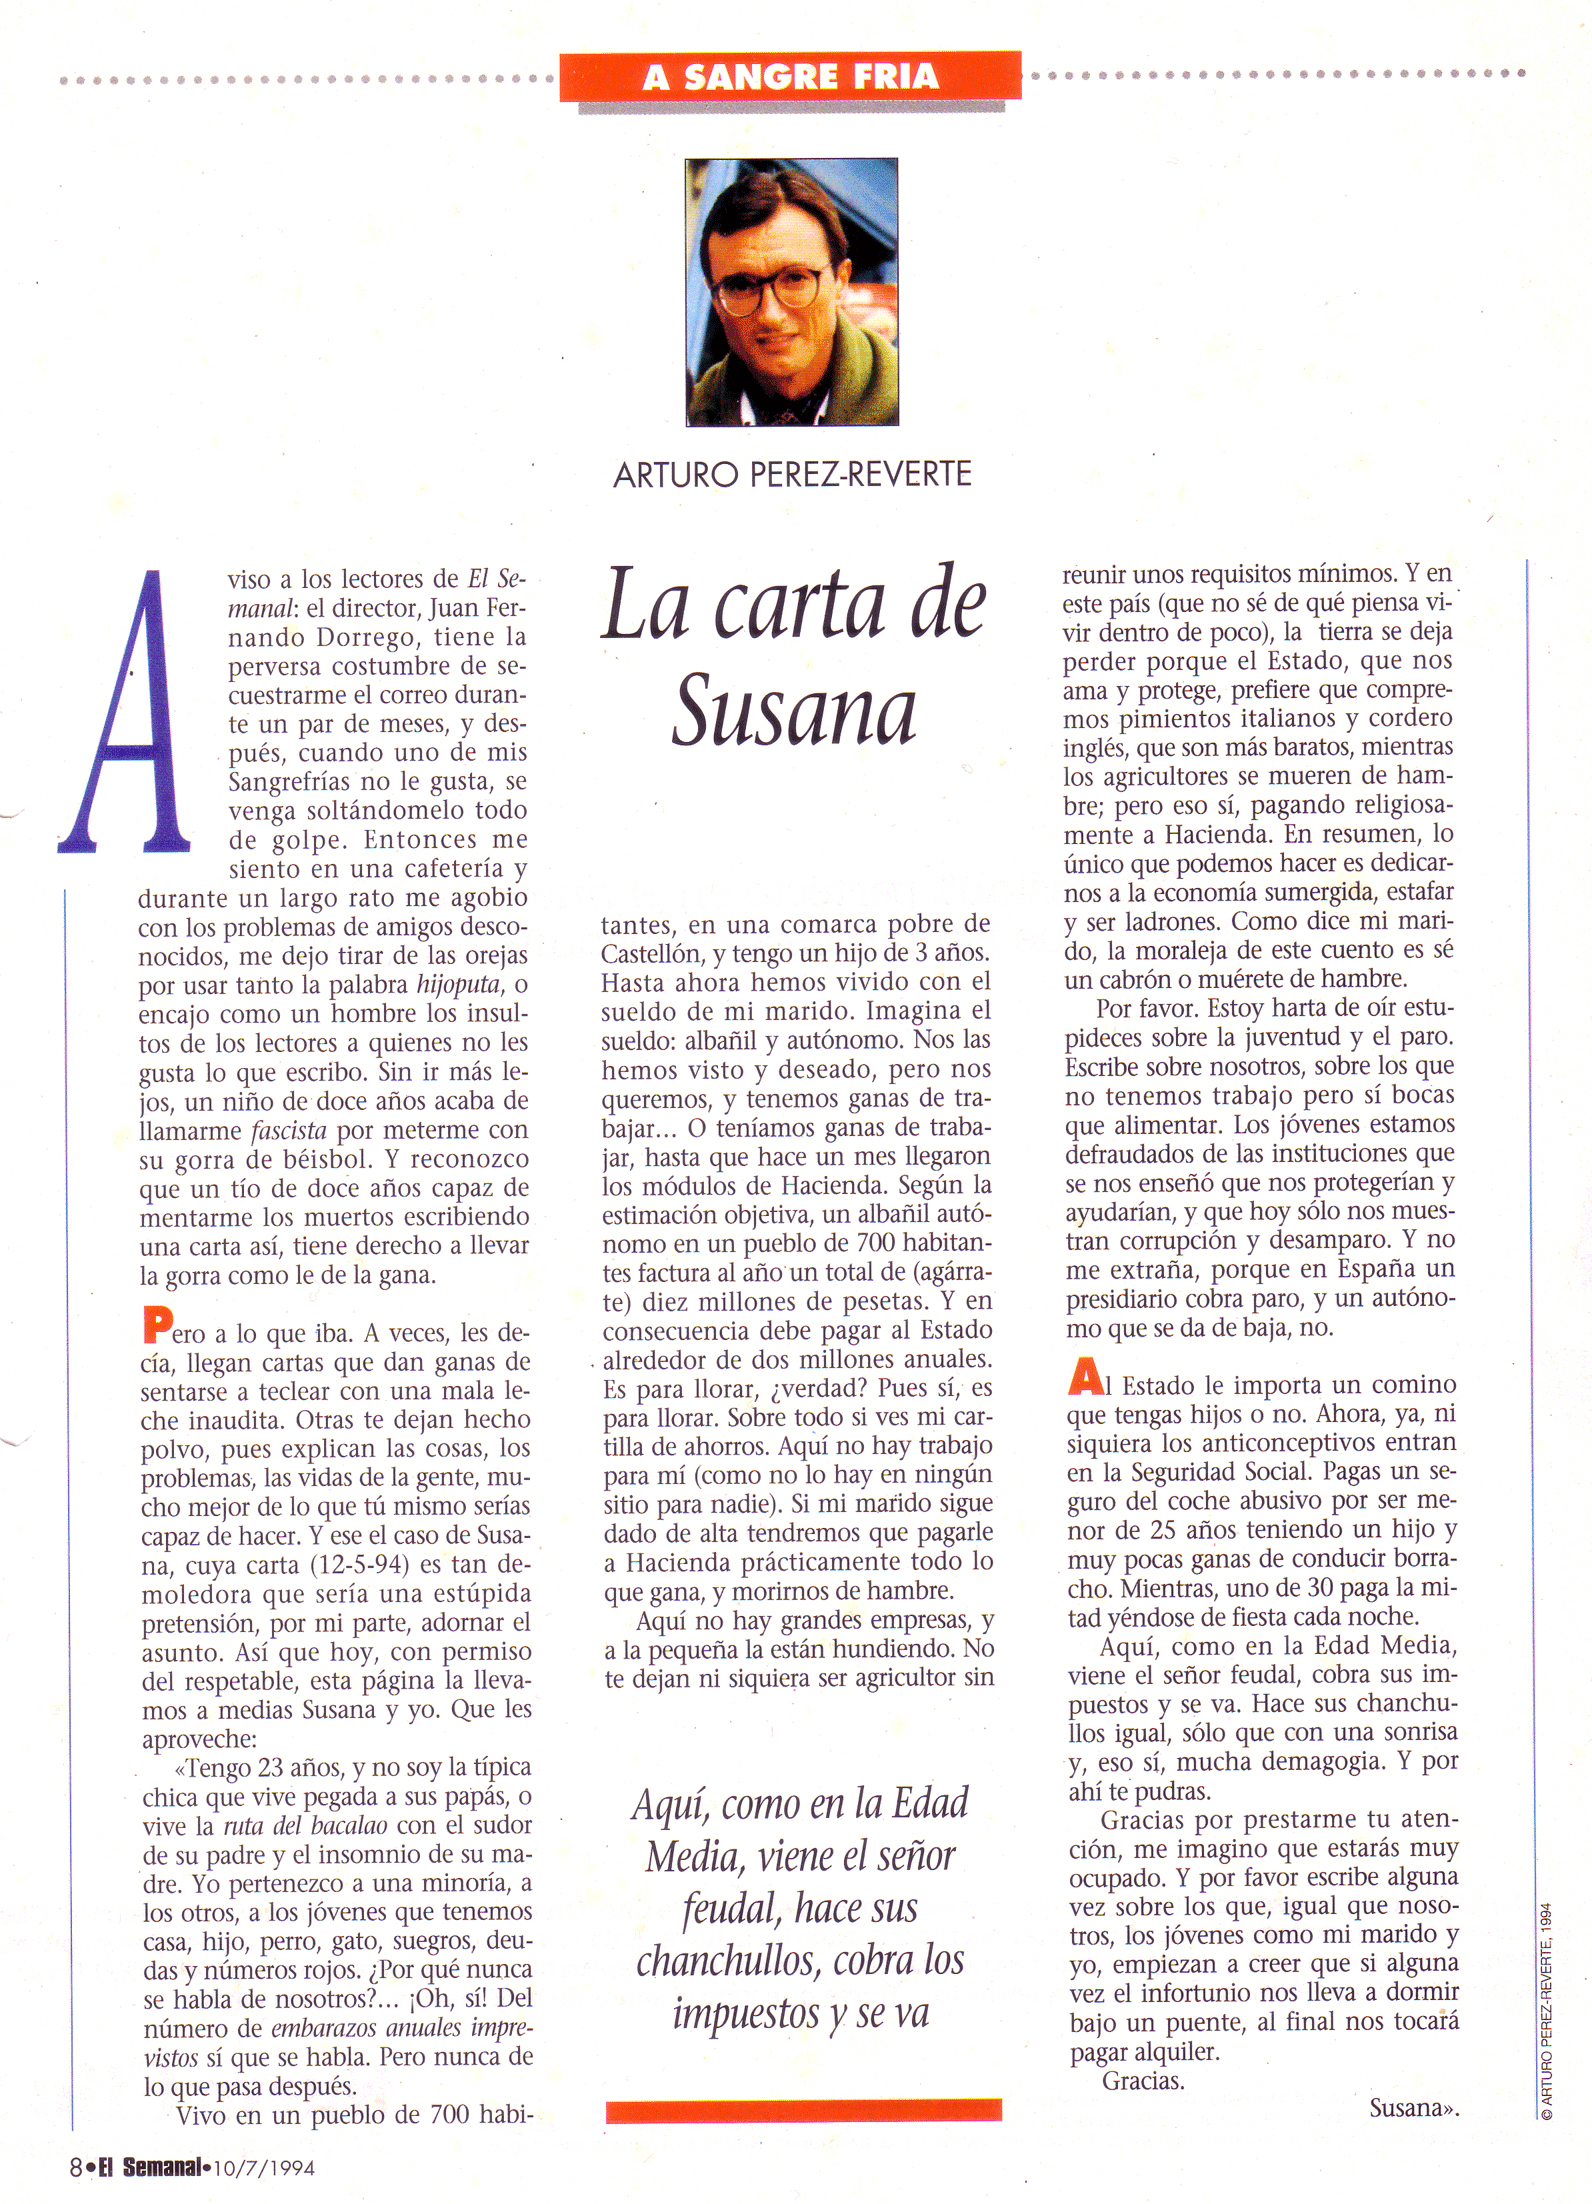 "La carta de Susana" El Semanal 10 de julio de 1994